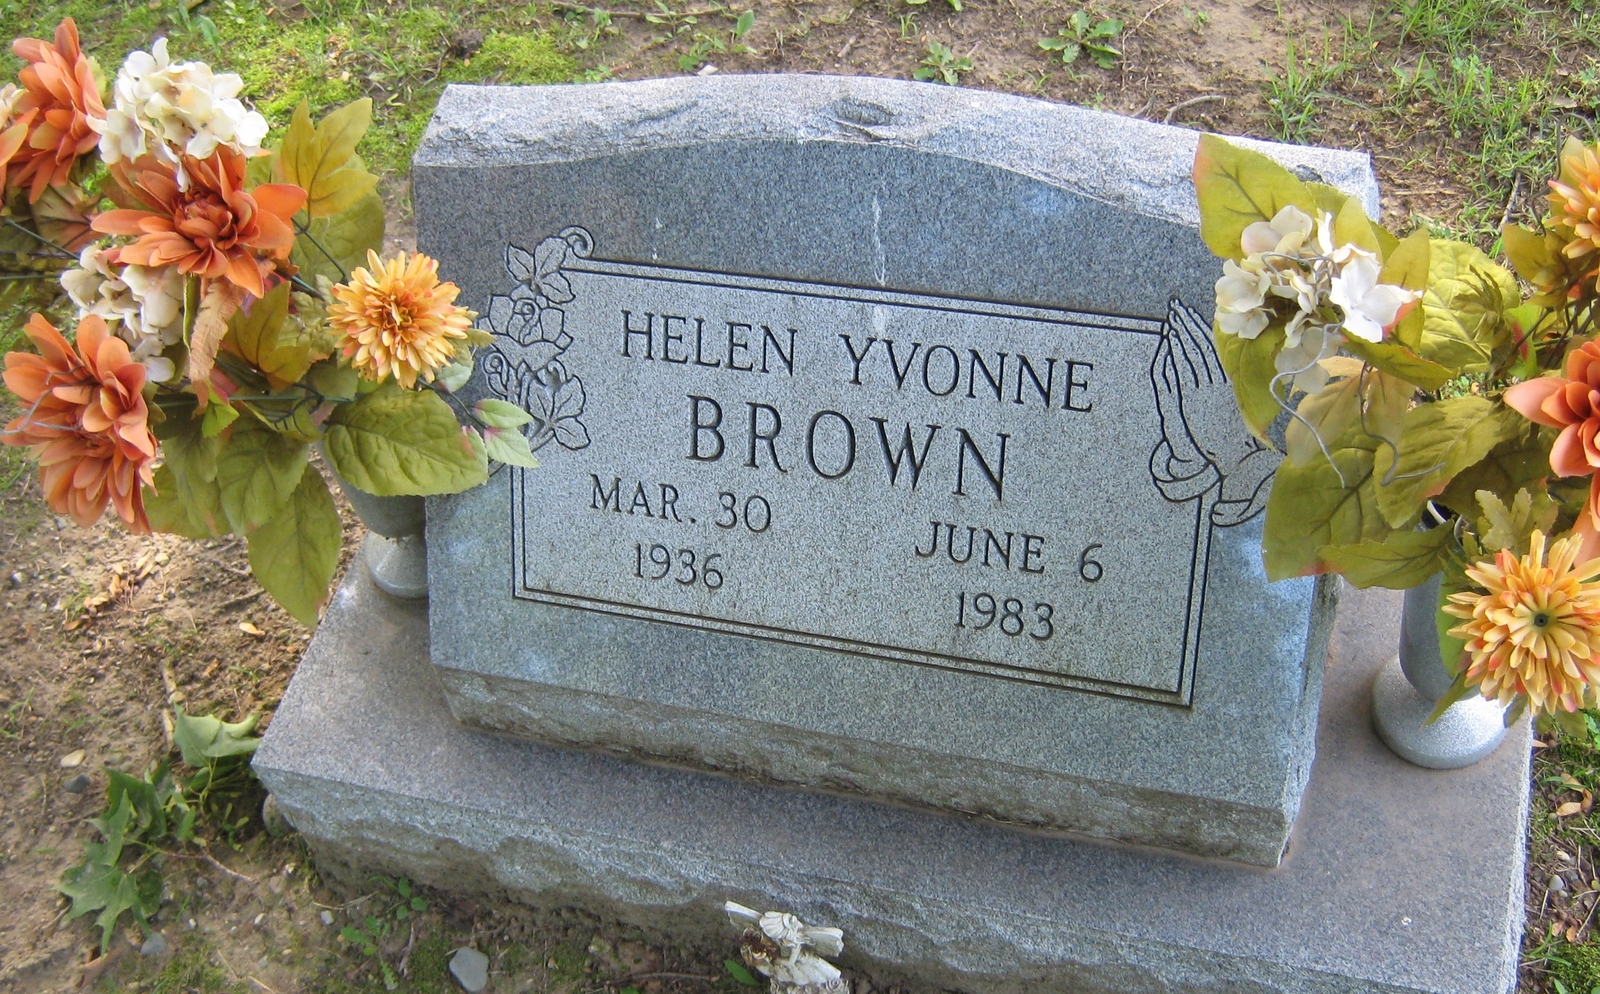 Helen Yvonne Brown